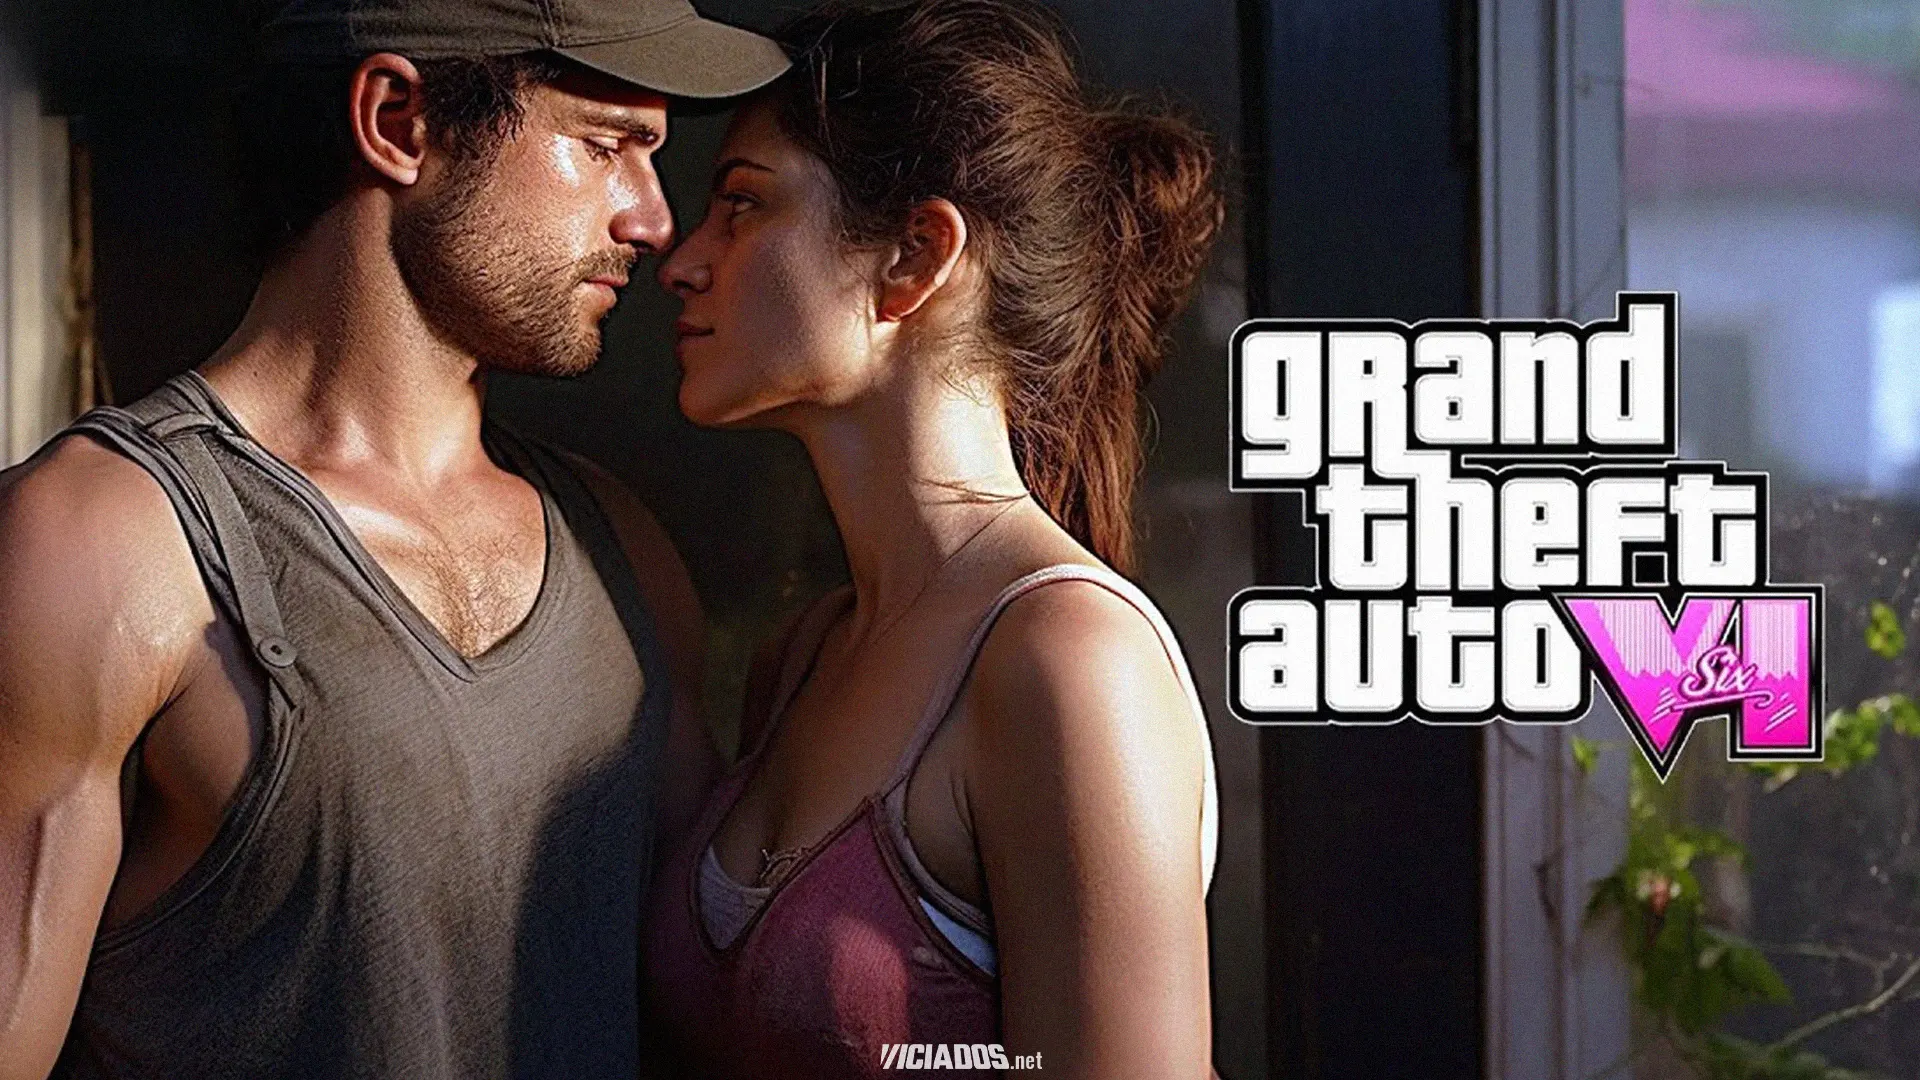 Funcionaria da Rockstar Games revela detalhes do trailer de Grand Theft Auto VI 2024 Portal Viciados